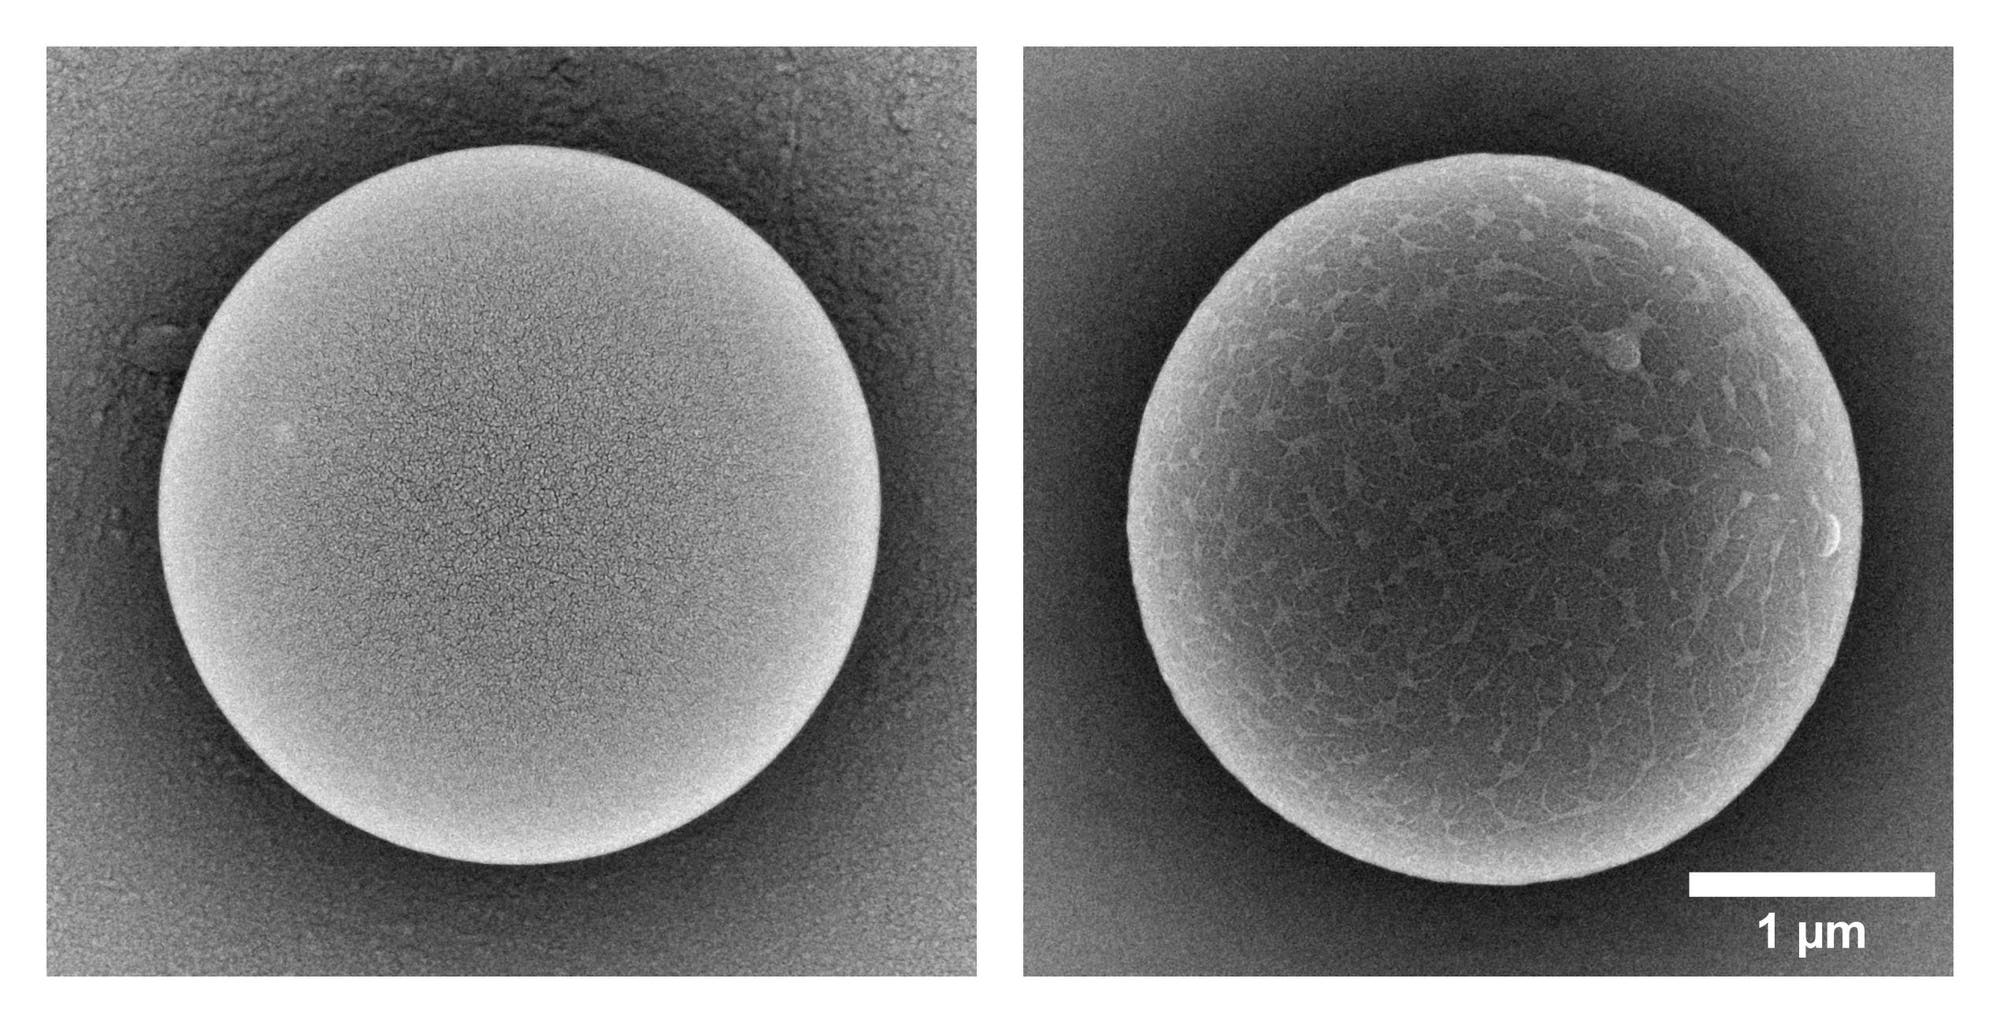 zwei elektronenmikroskopische Aufnahmen von je einem Kügelchen, links mit hellgrauer  Oberfläche, rechts mit dunkelgrauer Oberfläche, die von hellgrauen Mustern durchzogen ist